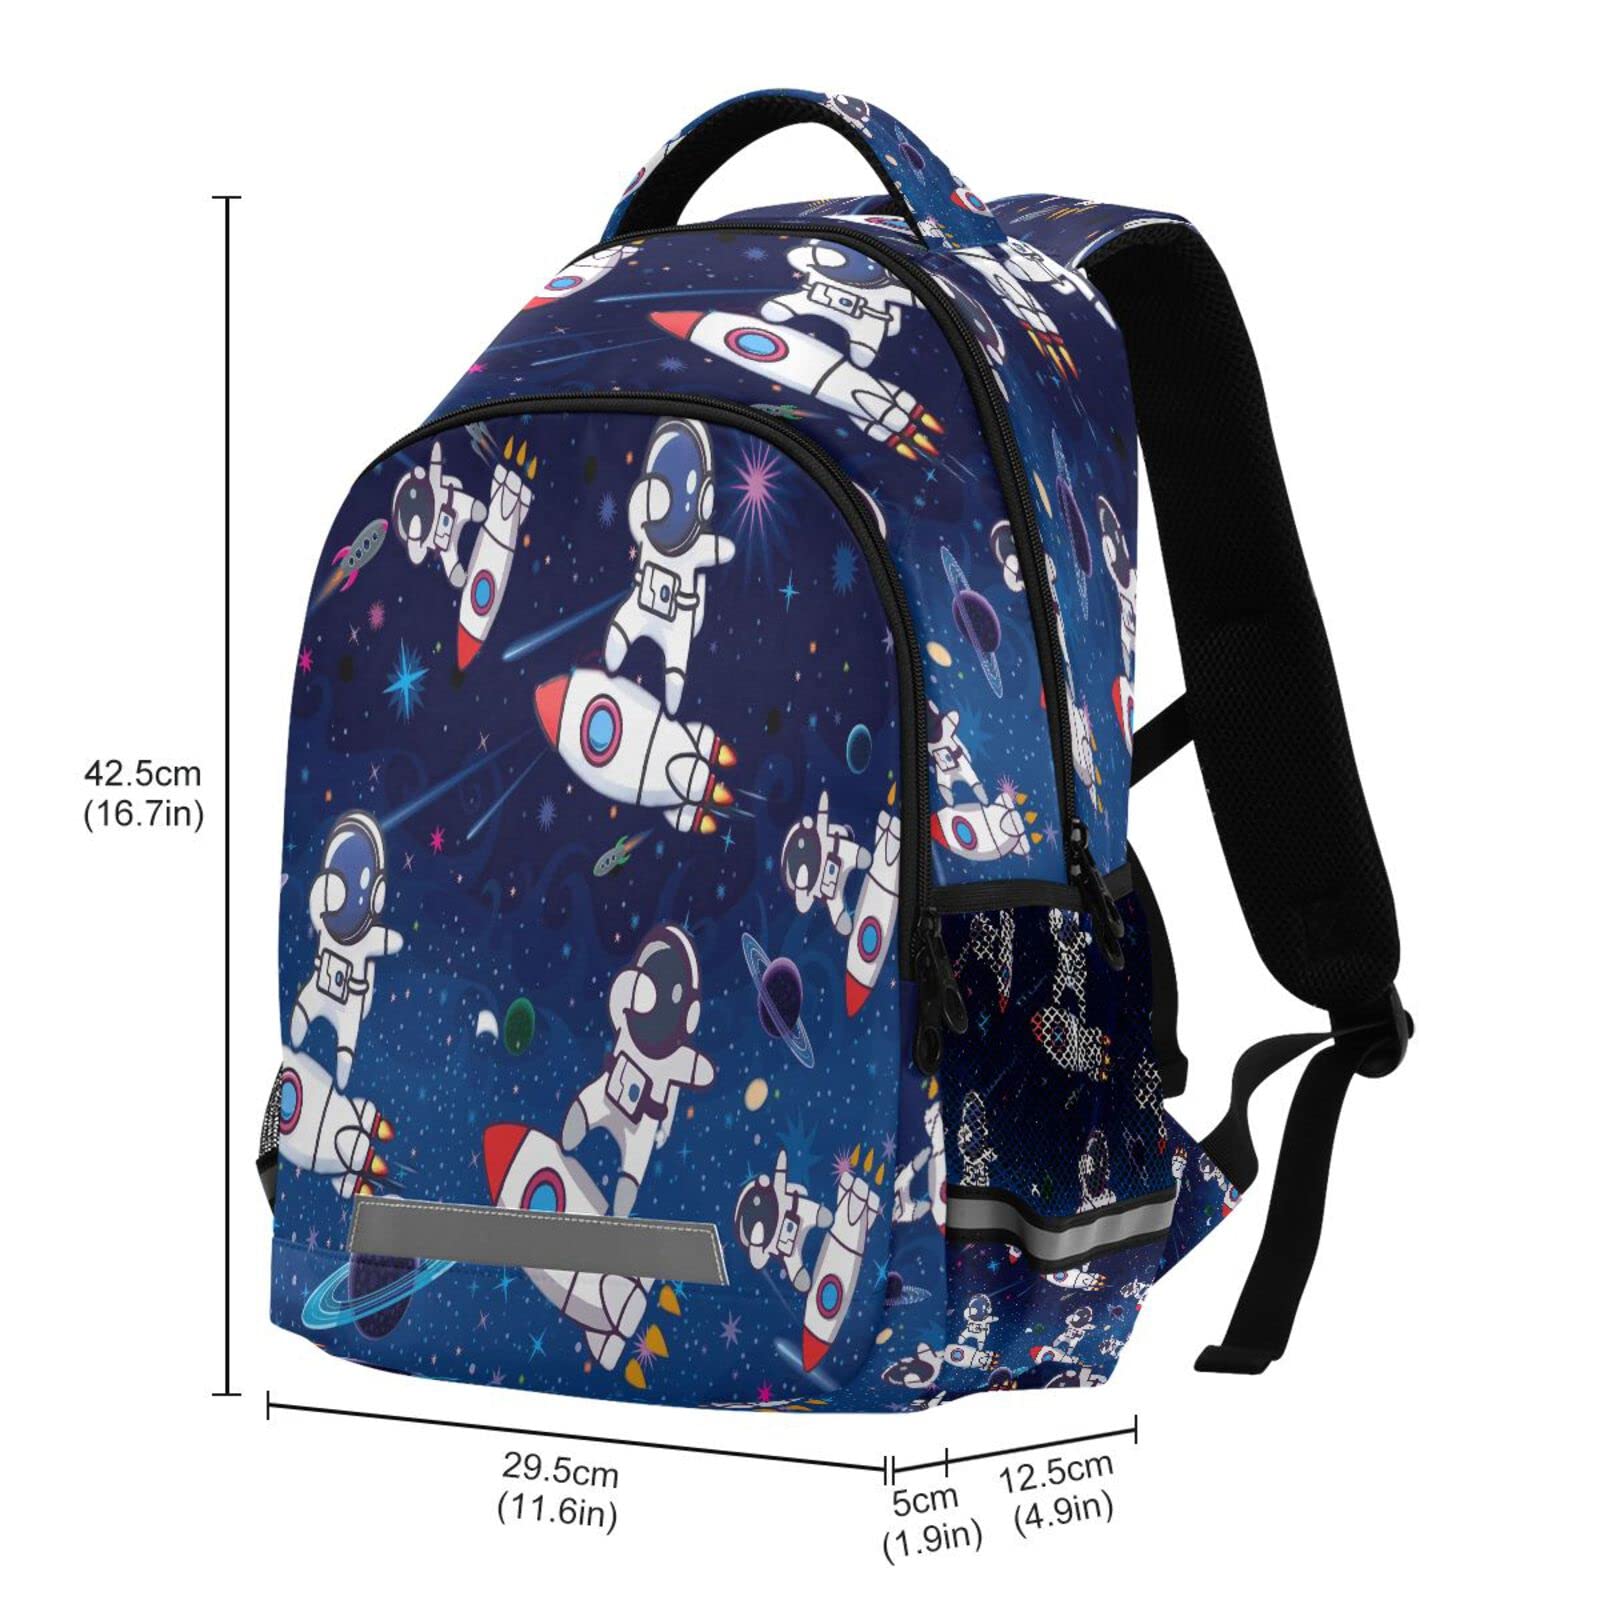 MNSRUU Rocket School Backpack for Kids 5-12 yrs,Space Theme Backpack Kindergarten School Bag